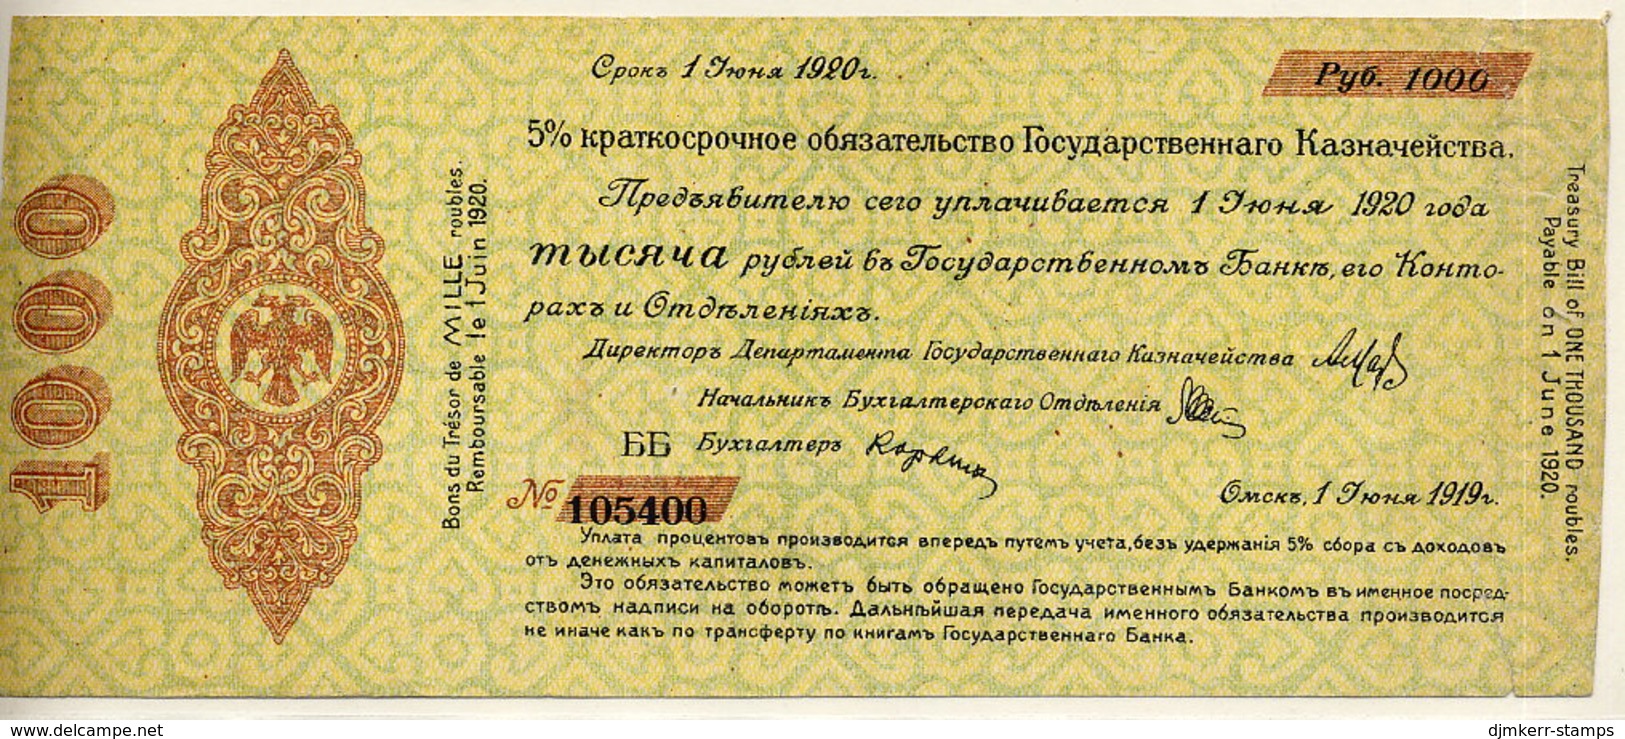 SIBERIA & URALS (Omsk) June 1919 1000 Rubles  F  S863 - Russia